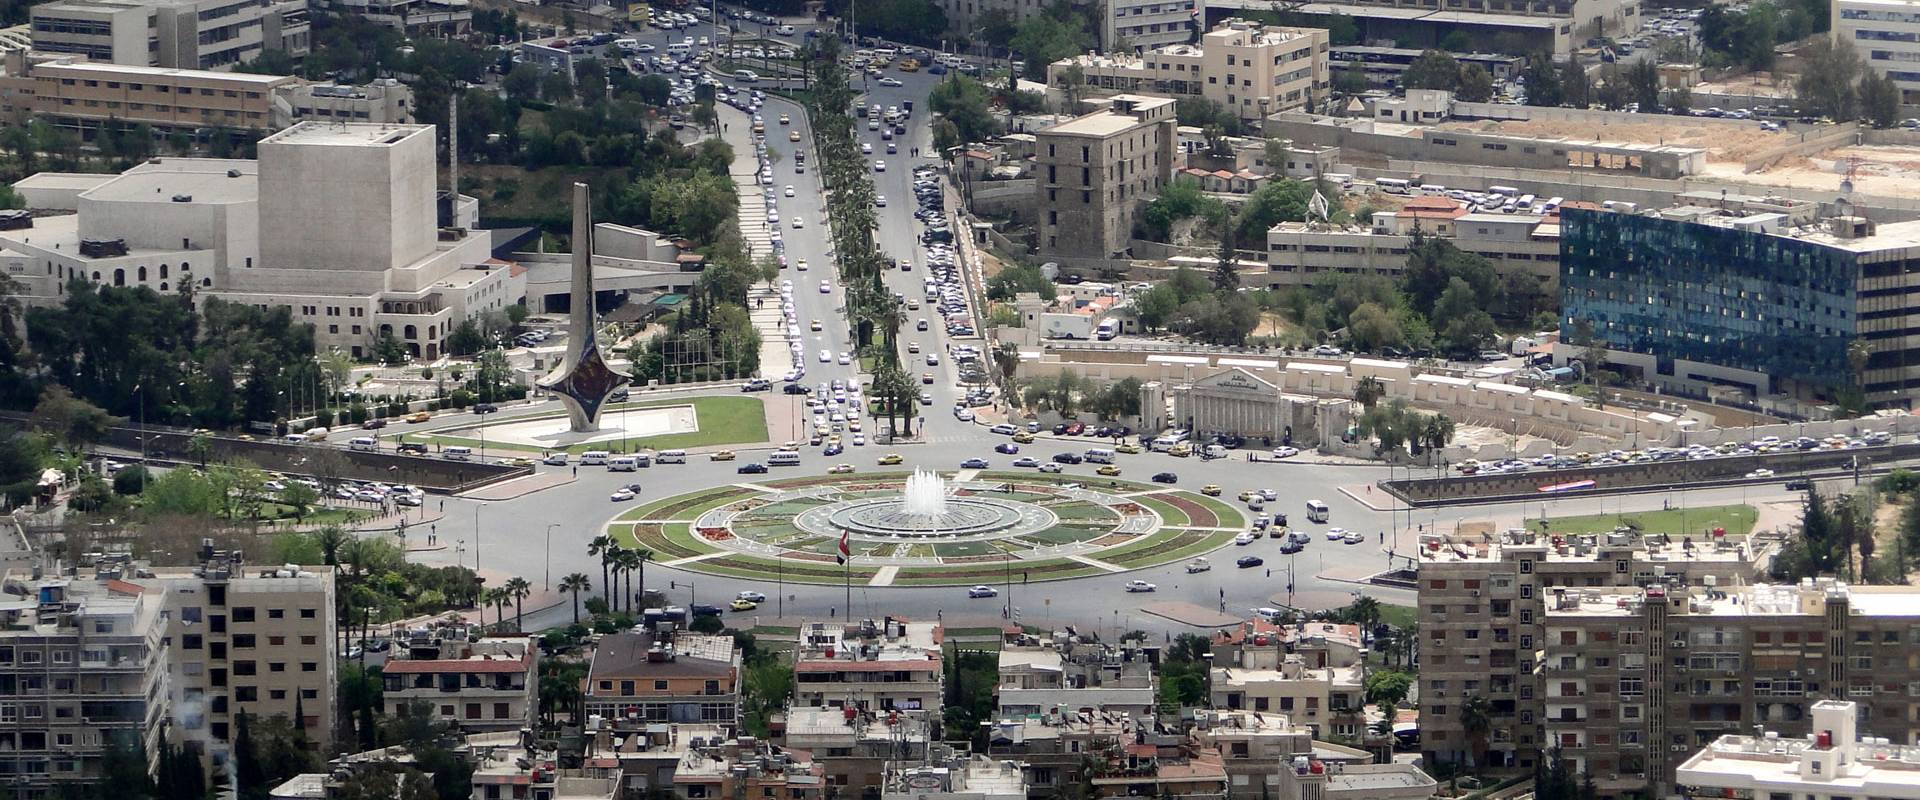 Umayyad Square in Damascus